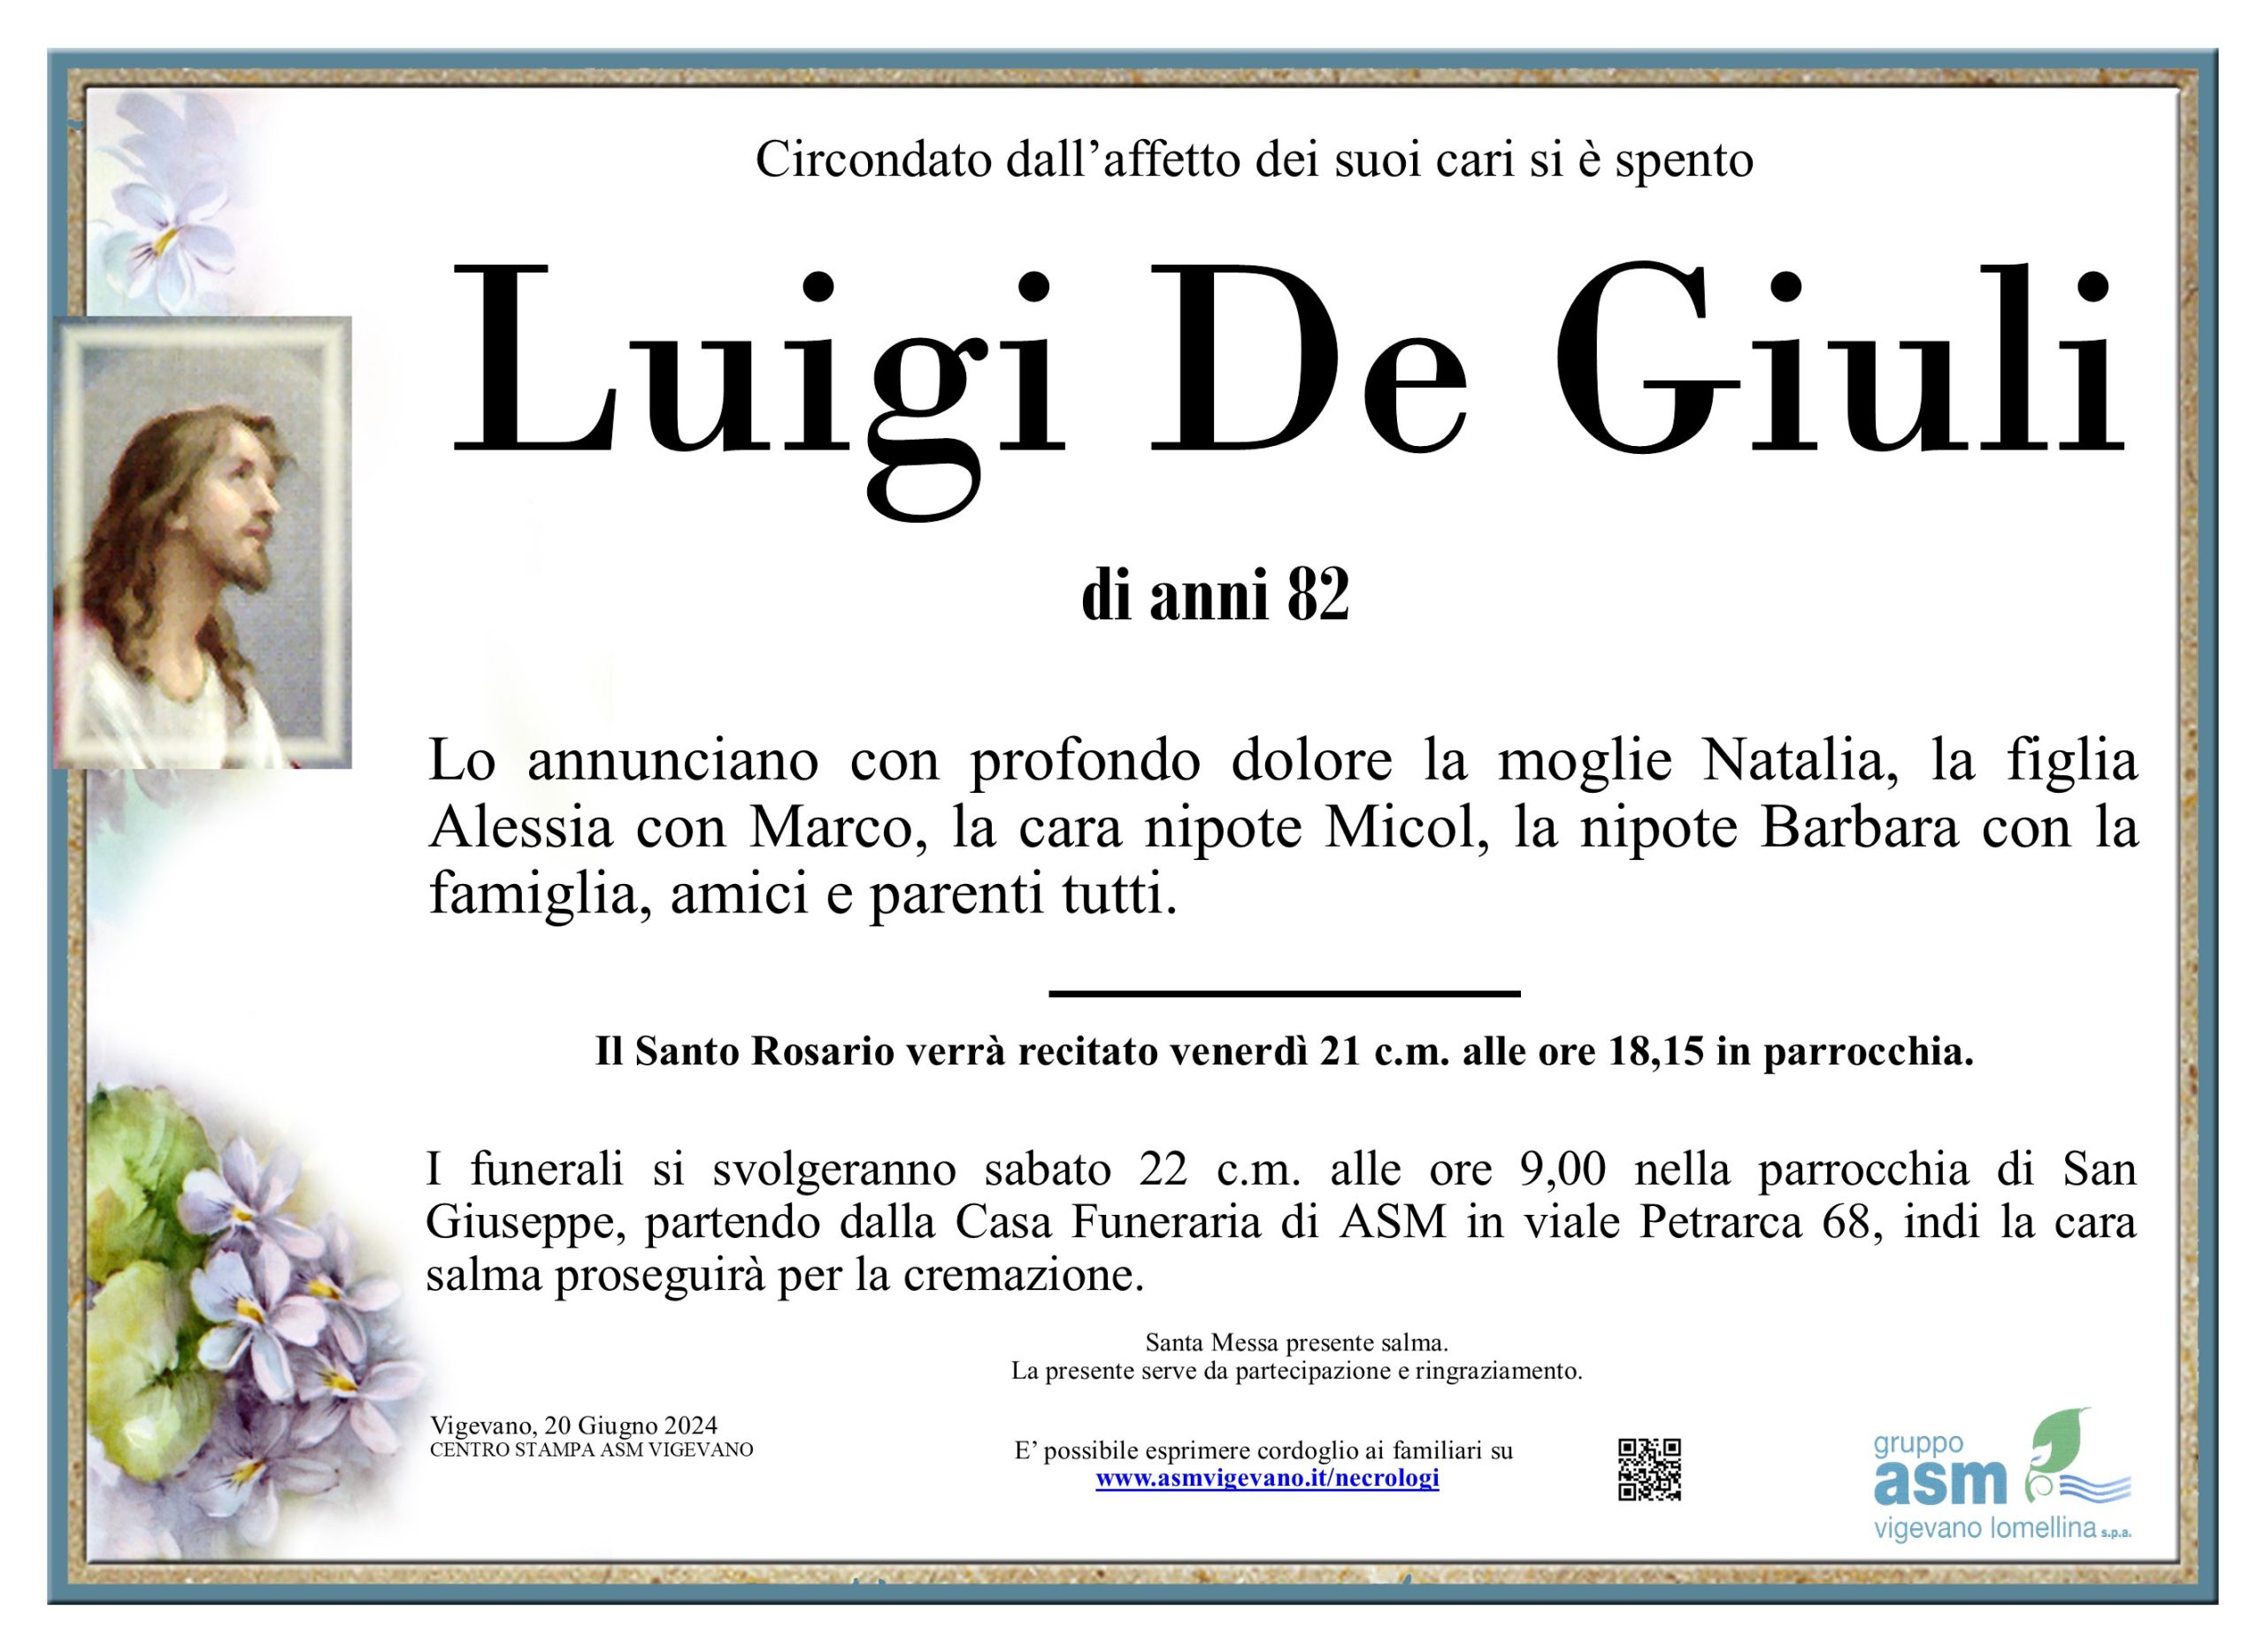 Luigi De Giuli